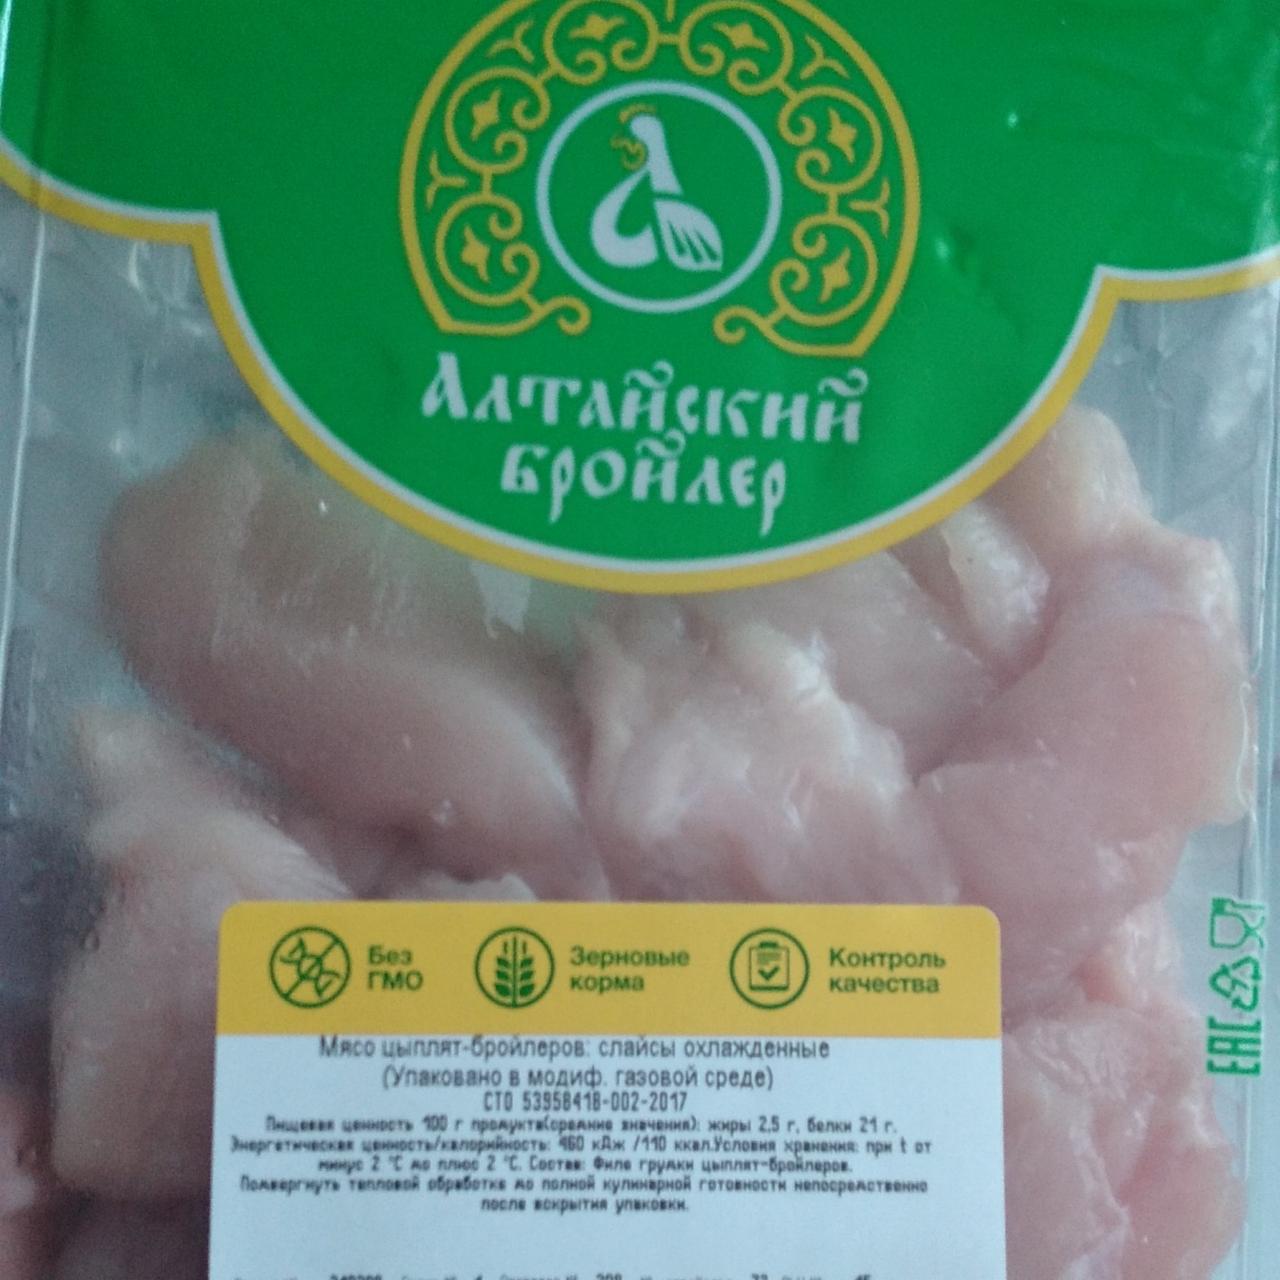 Фото - Мясо цыплят бройлеров слайсы охлажденные Алтайский бройлер